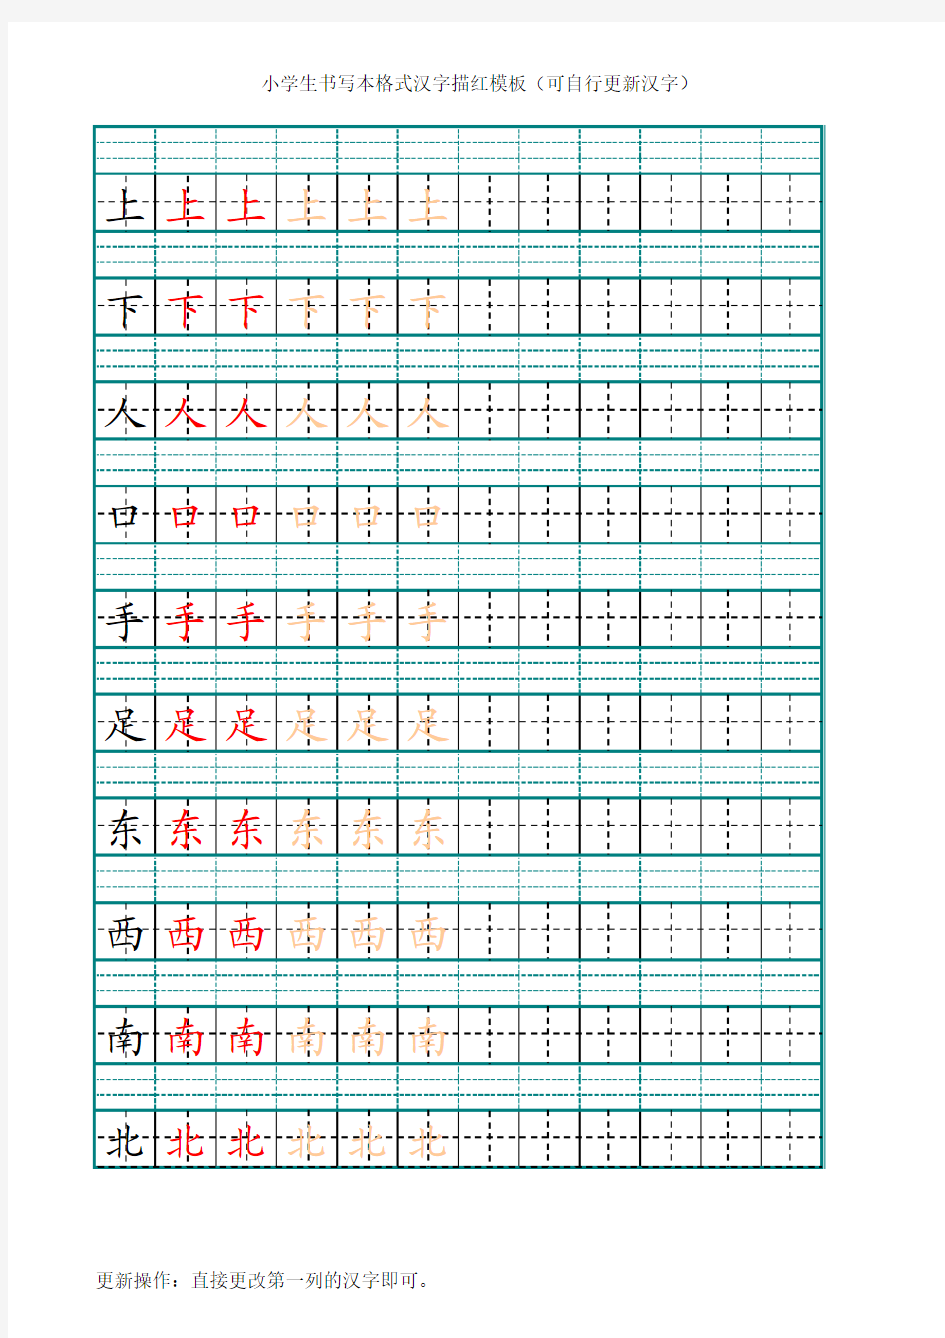 小学生书写本格式汉字描红模板(可自行更新单字和整列汉字)